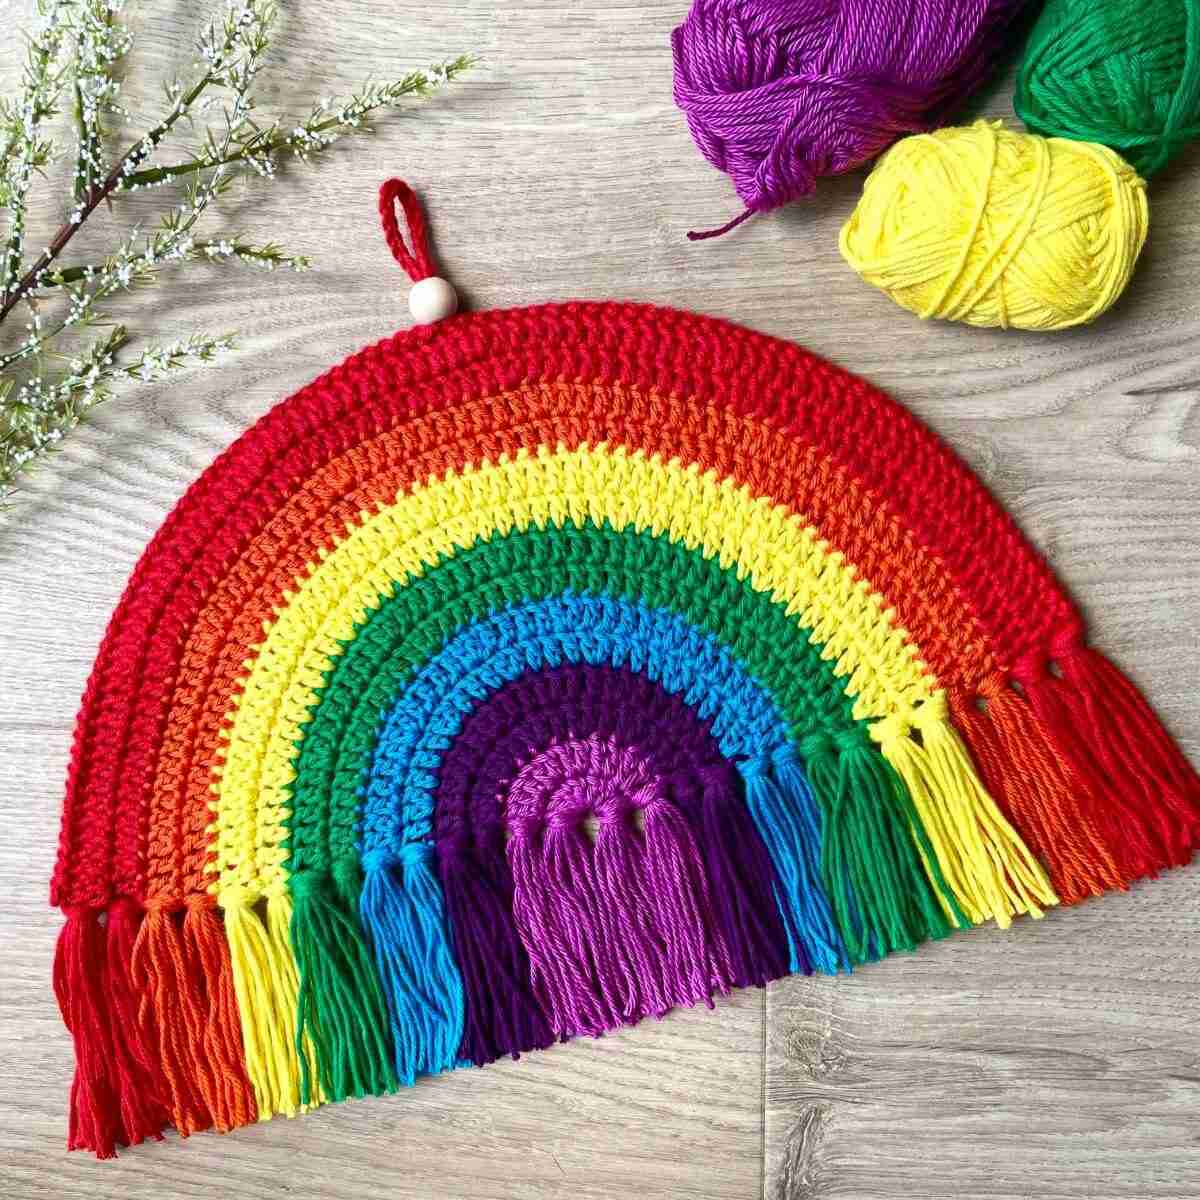 Free crochet rainbow pattern: easy crochet wall hanging pattern